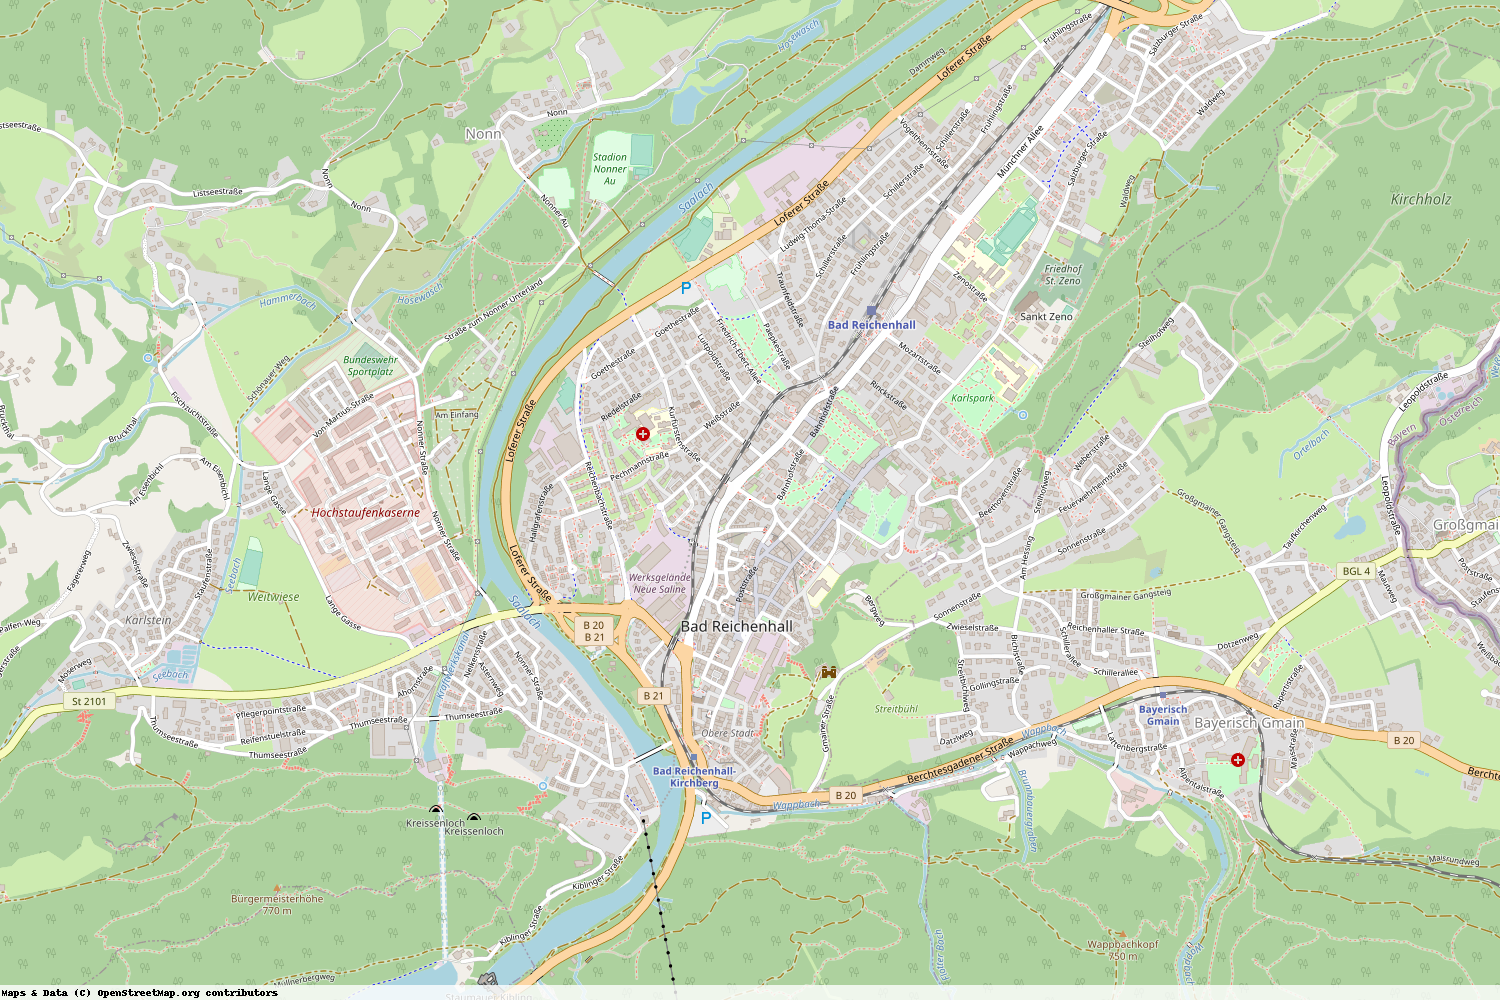 Ist gerade Stromausfall in Bayern - Berchtesgadener Land - Bad Reichenhall?